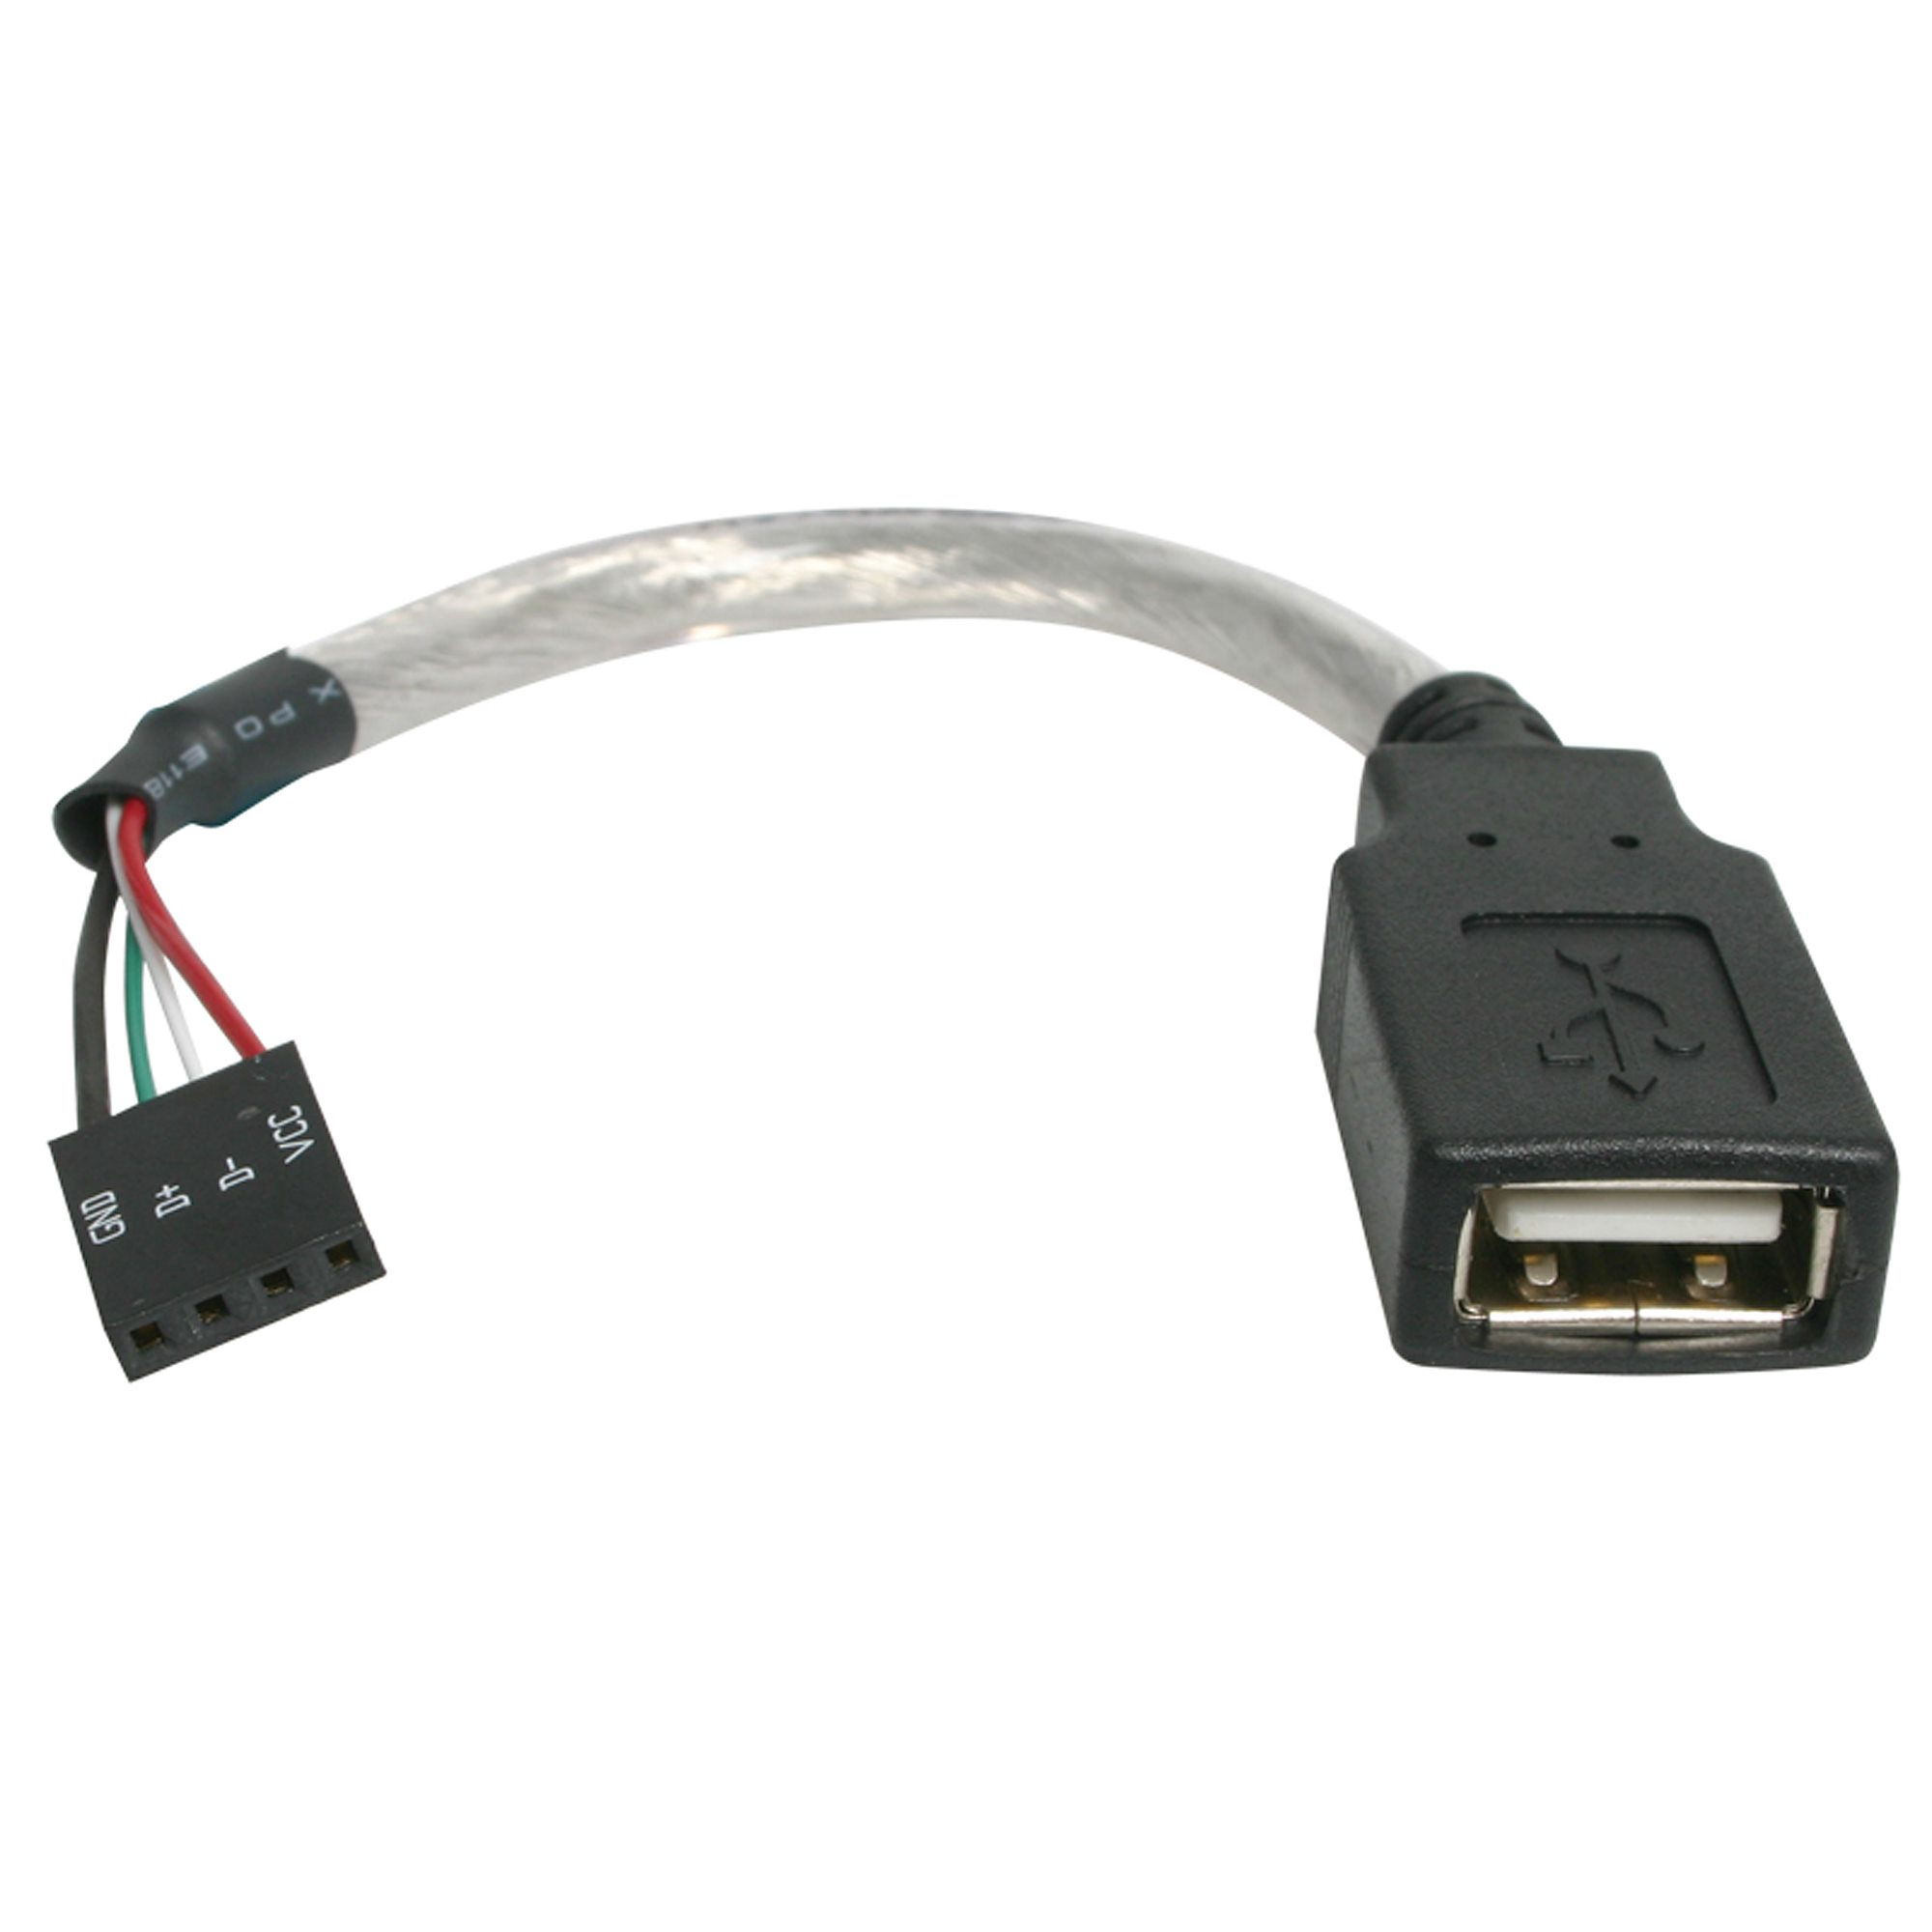 StarTech.com Cable de 15cm Adaptador Extensor USB 2.0 a IDC 4 pines - Conector a Placa Base - Hembra a Hembra